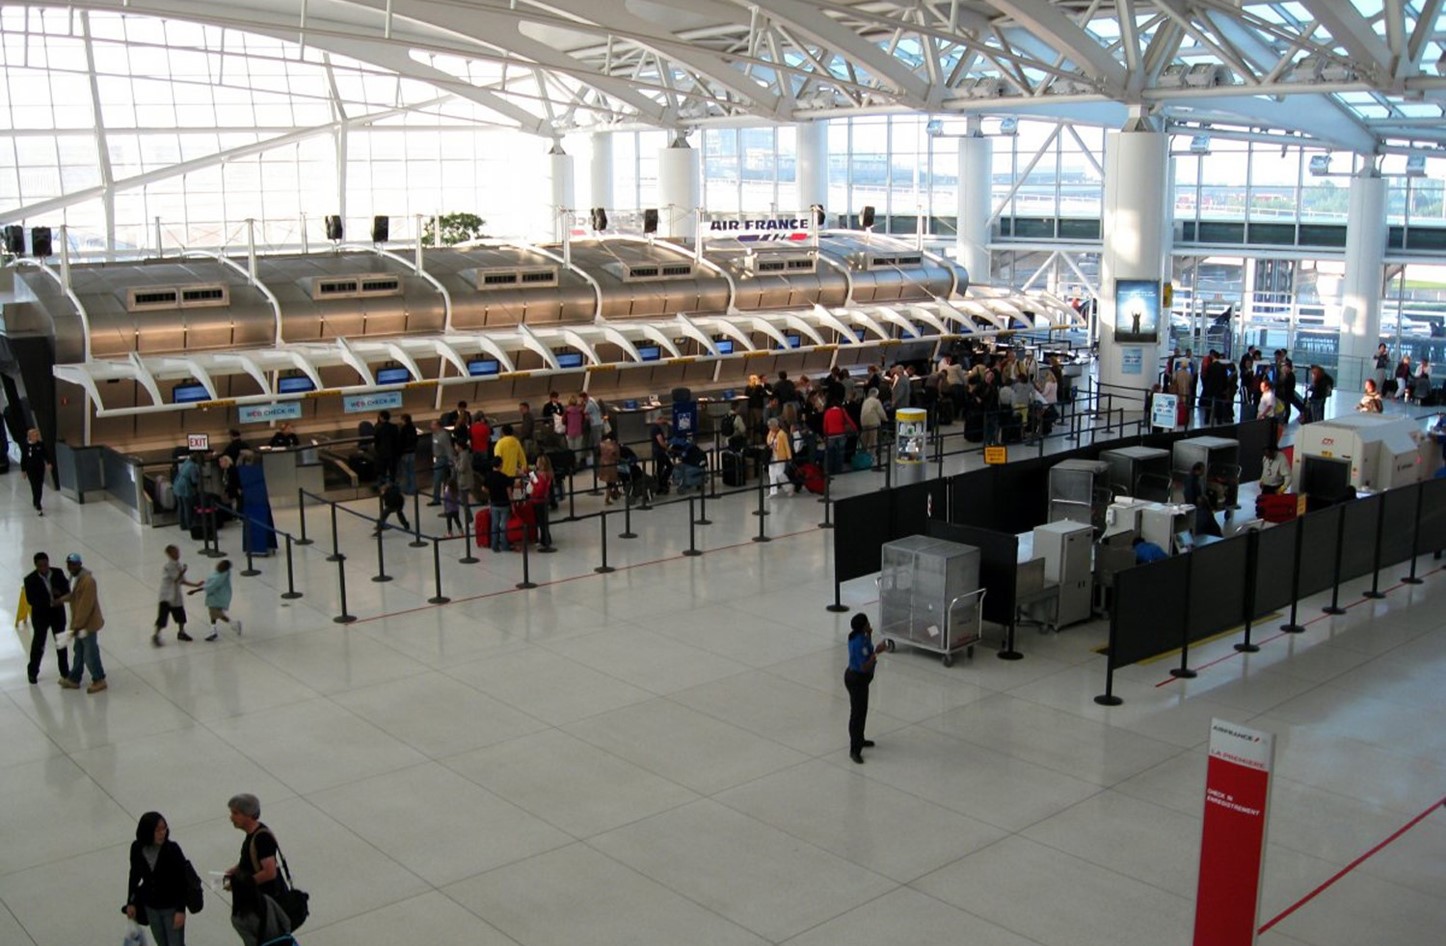 عودة التيار الكهربائي بعد عطل اثر على مئات الرحلات في مطار اتلانتا الاميركي